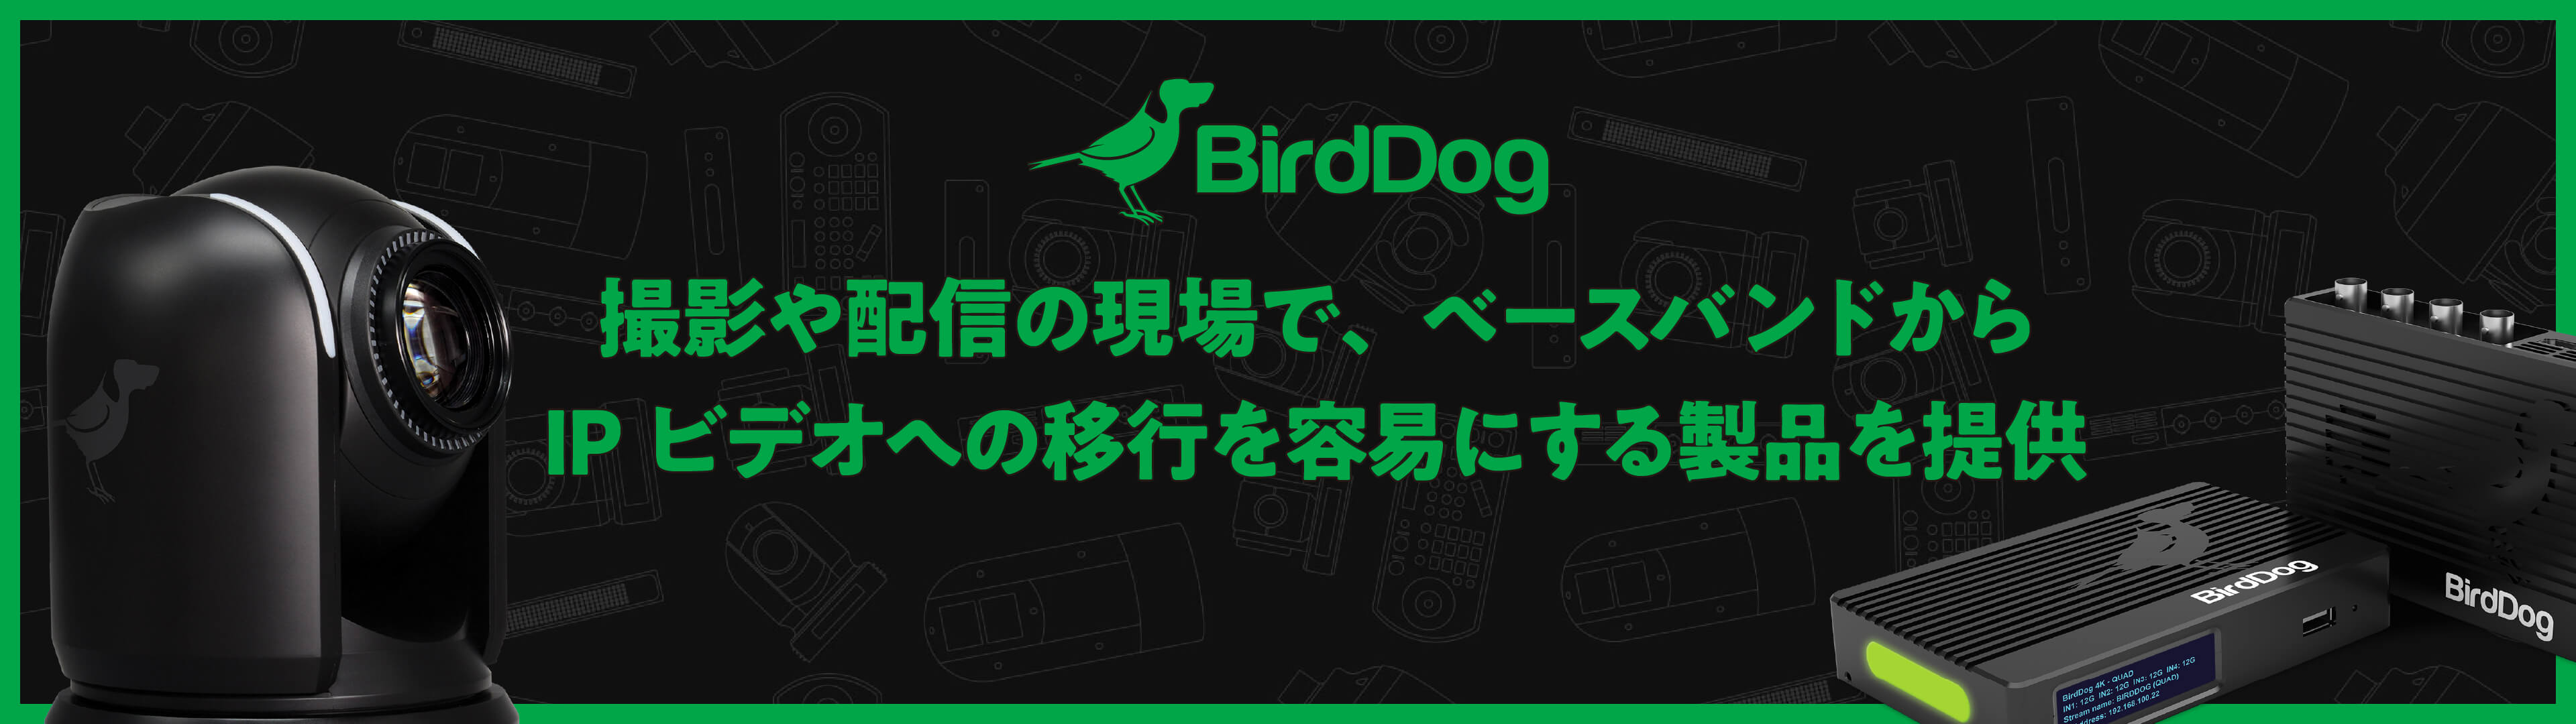 03 BirdDog 2